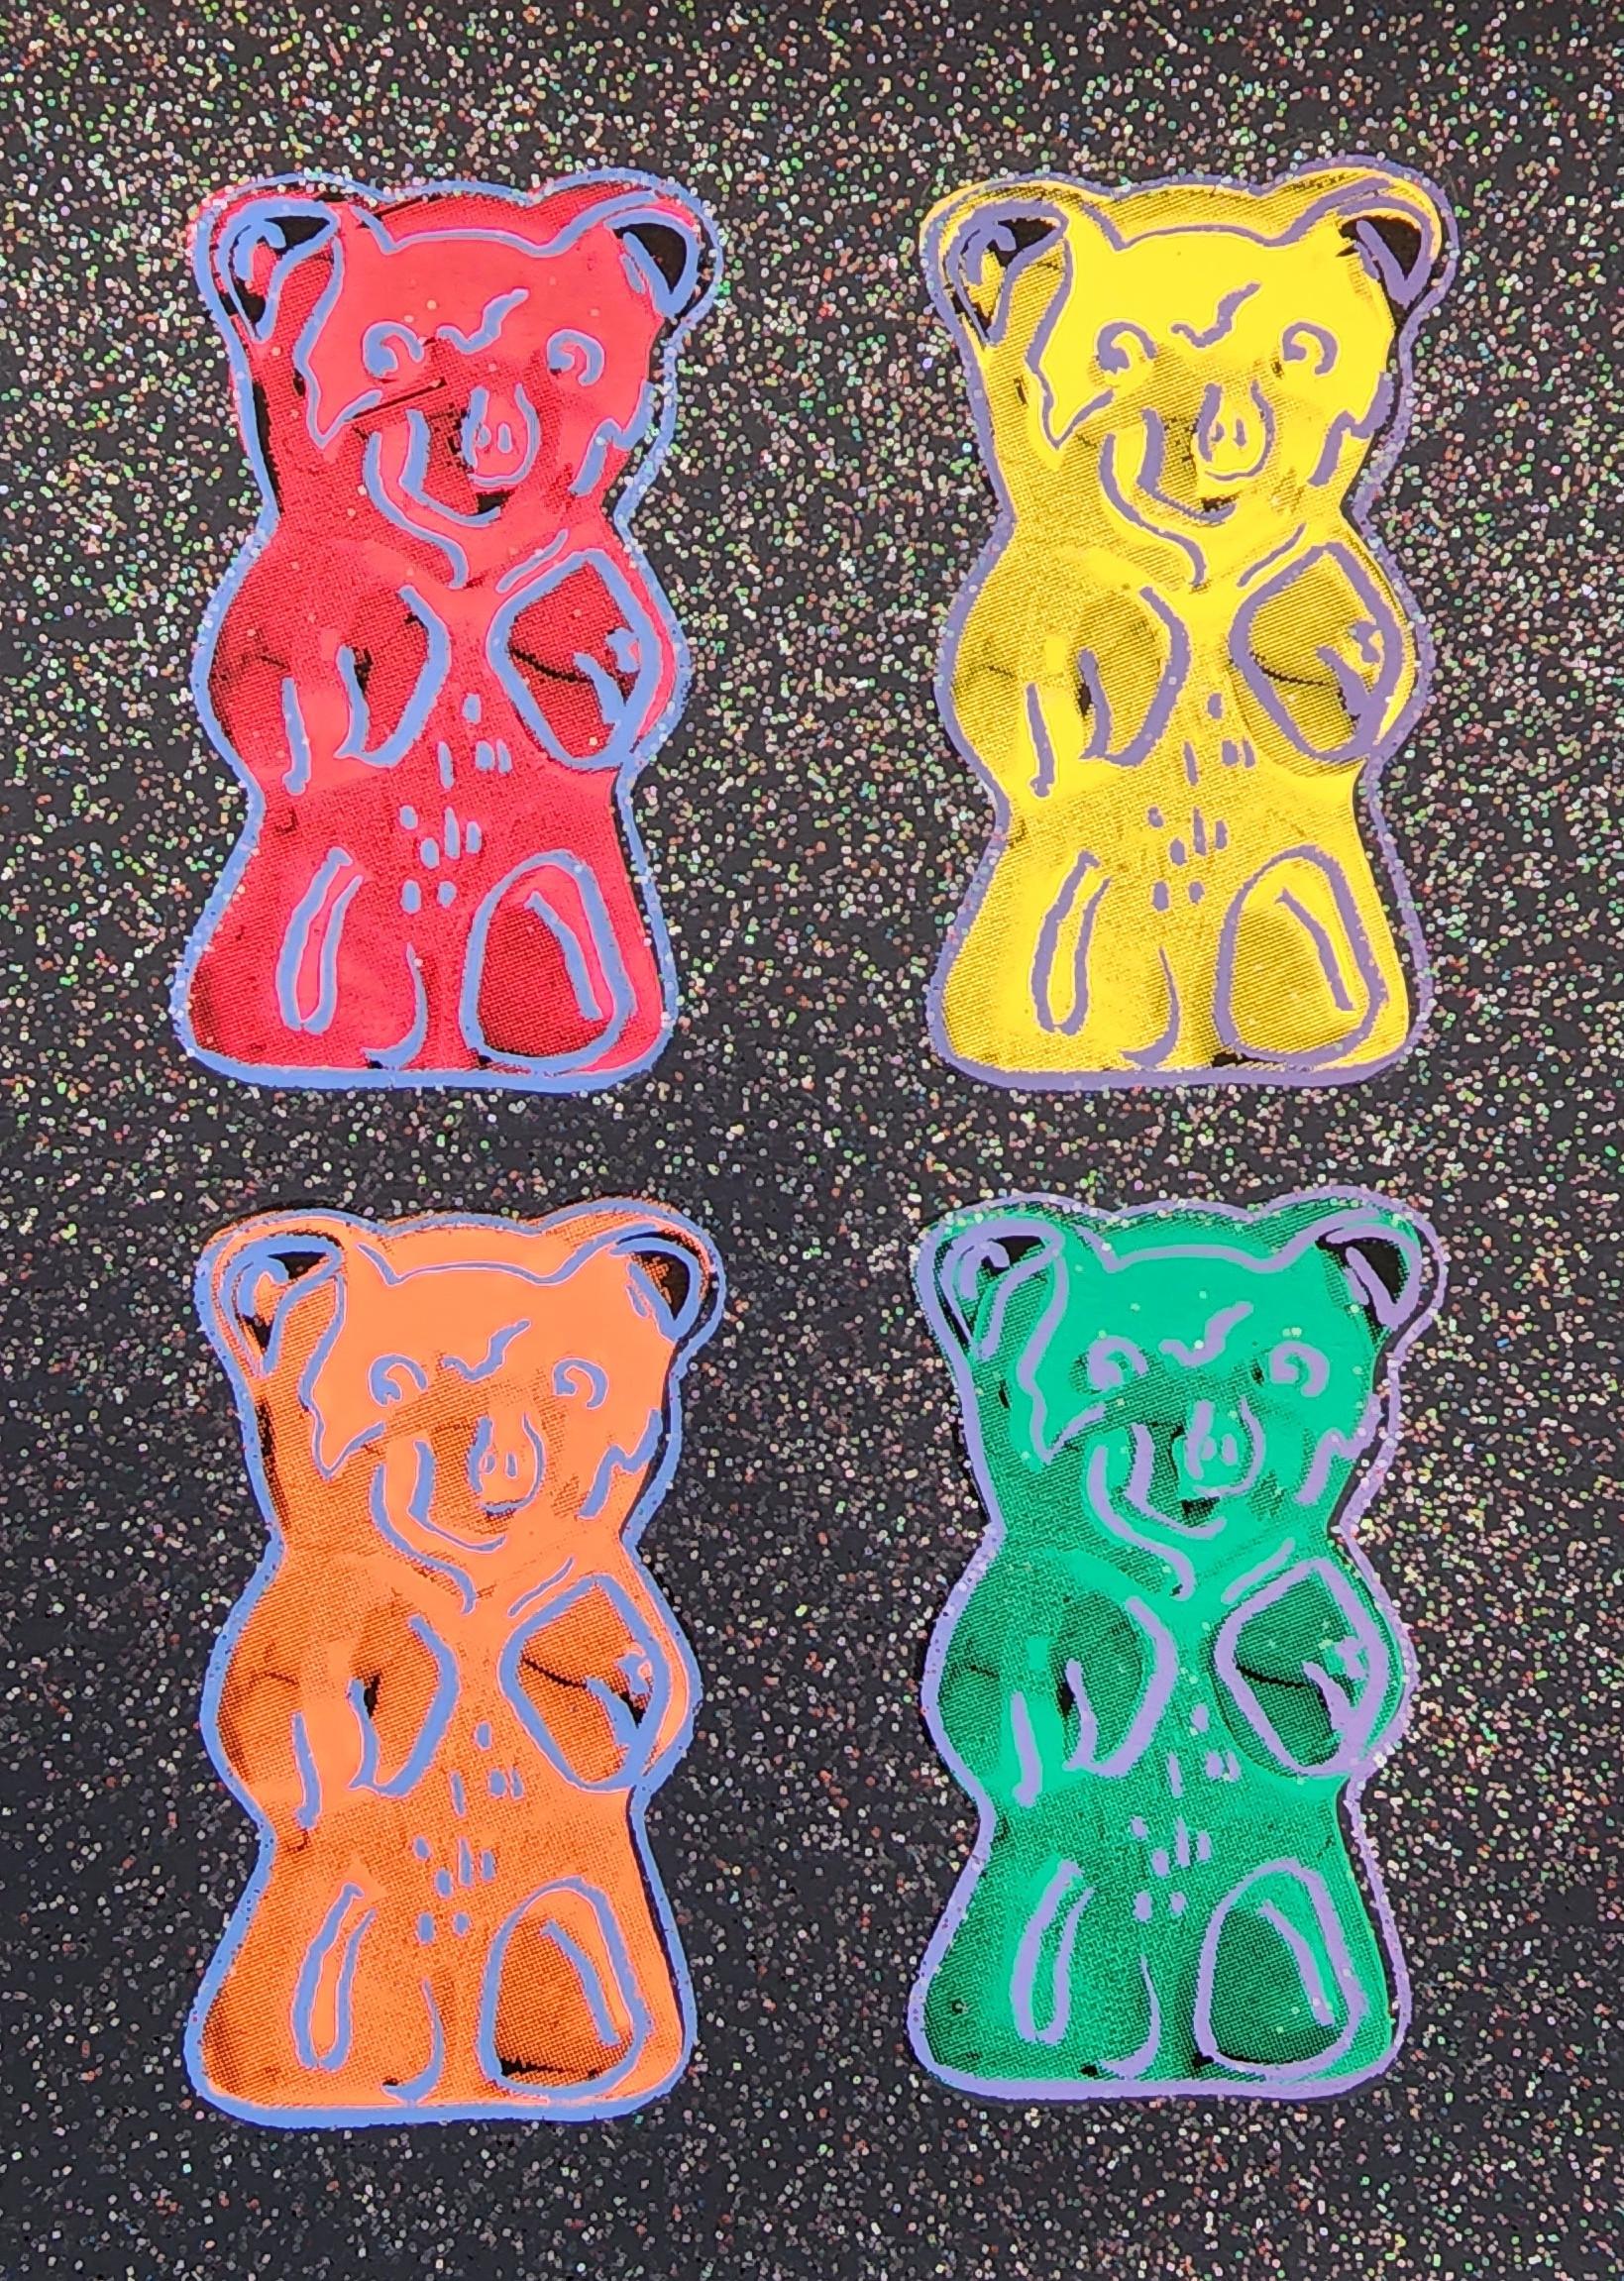 Gummi Bears #2 + Glitter, Small - BLACK (Pop Art, Warhol) (~50% OFF LIST PRICE) - Print by Jurgen Kuhl 